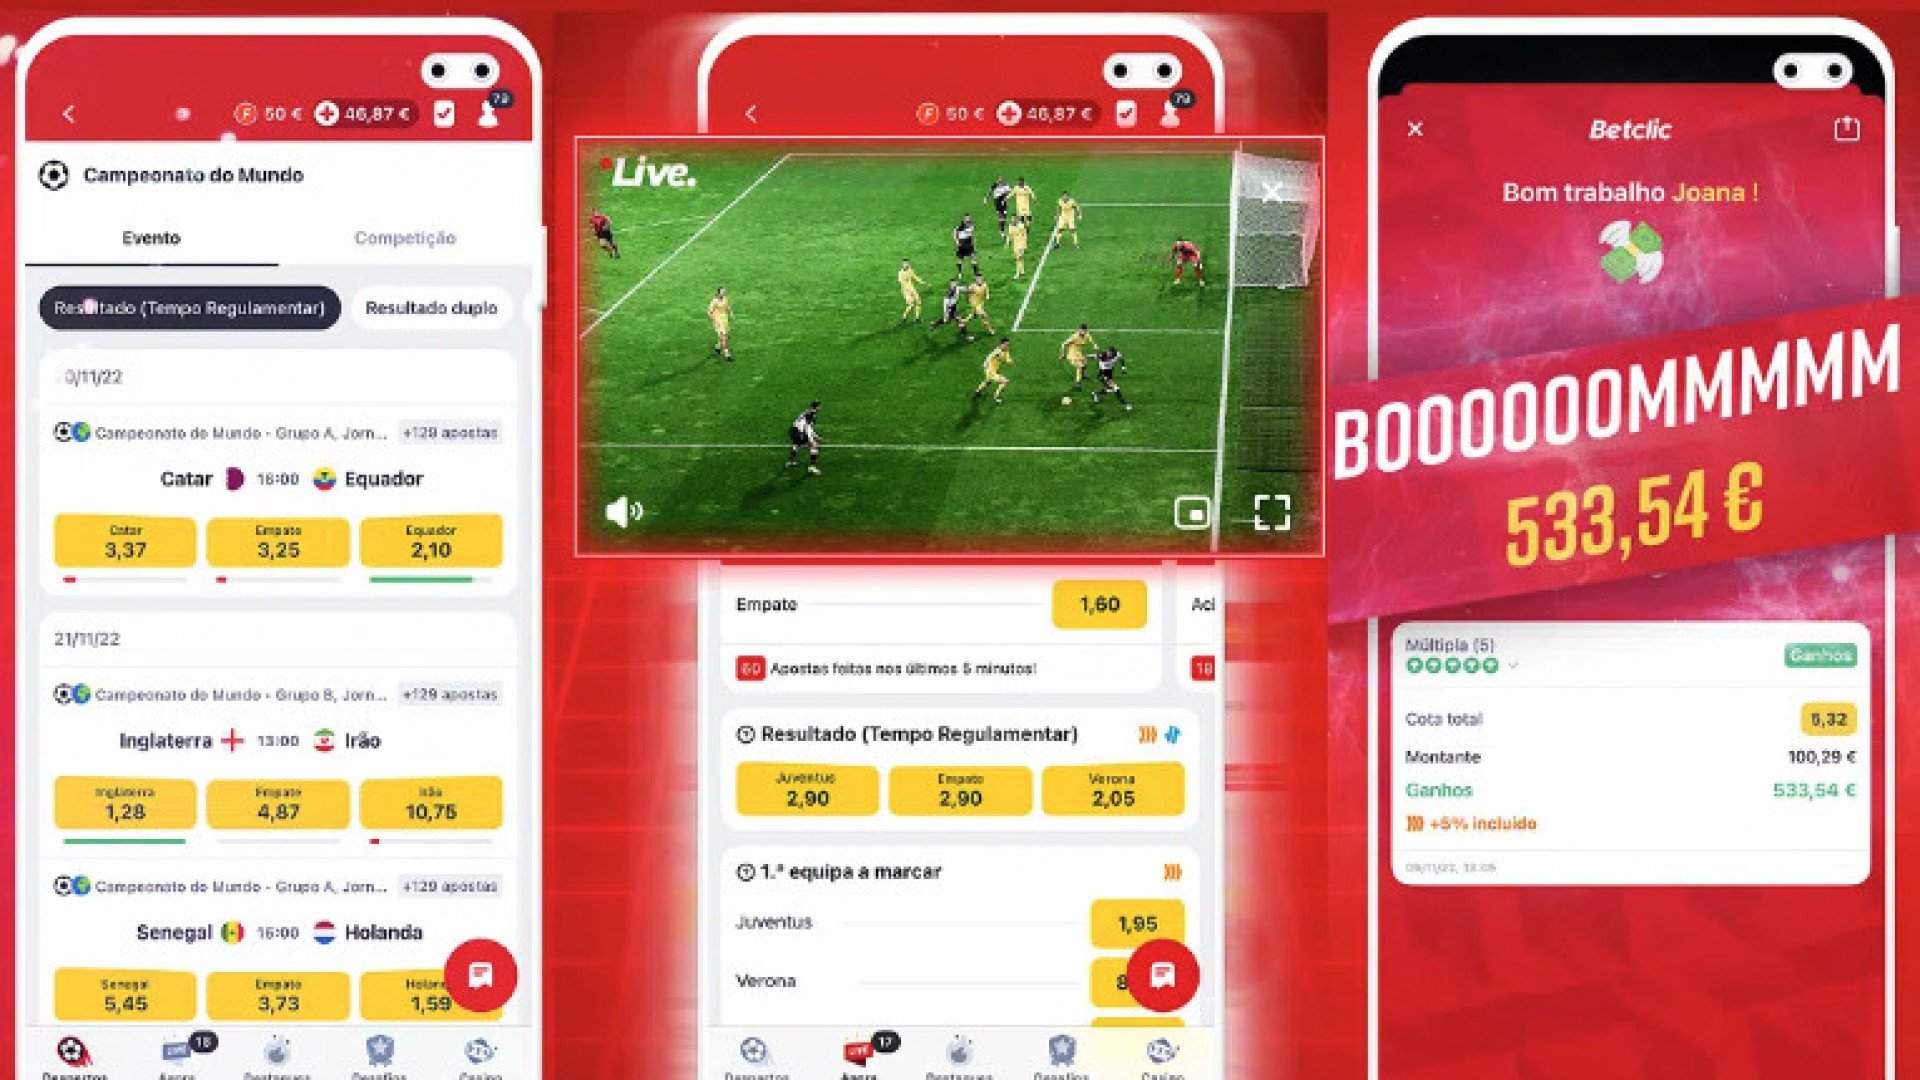 Trs celulares demonstrando diferentes ecrs e funes do Betclic app, incluindo desportos ao vivo e campeonatos do mundo. 